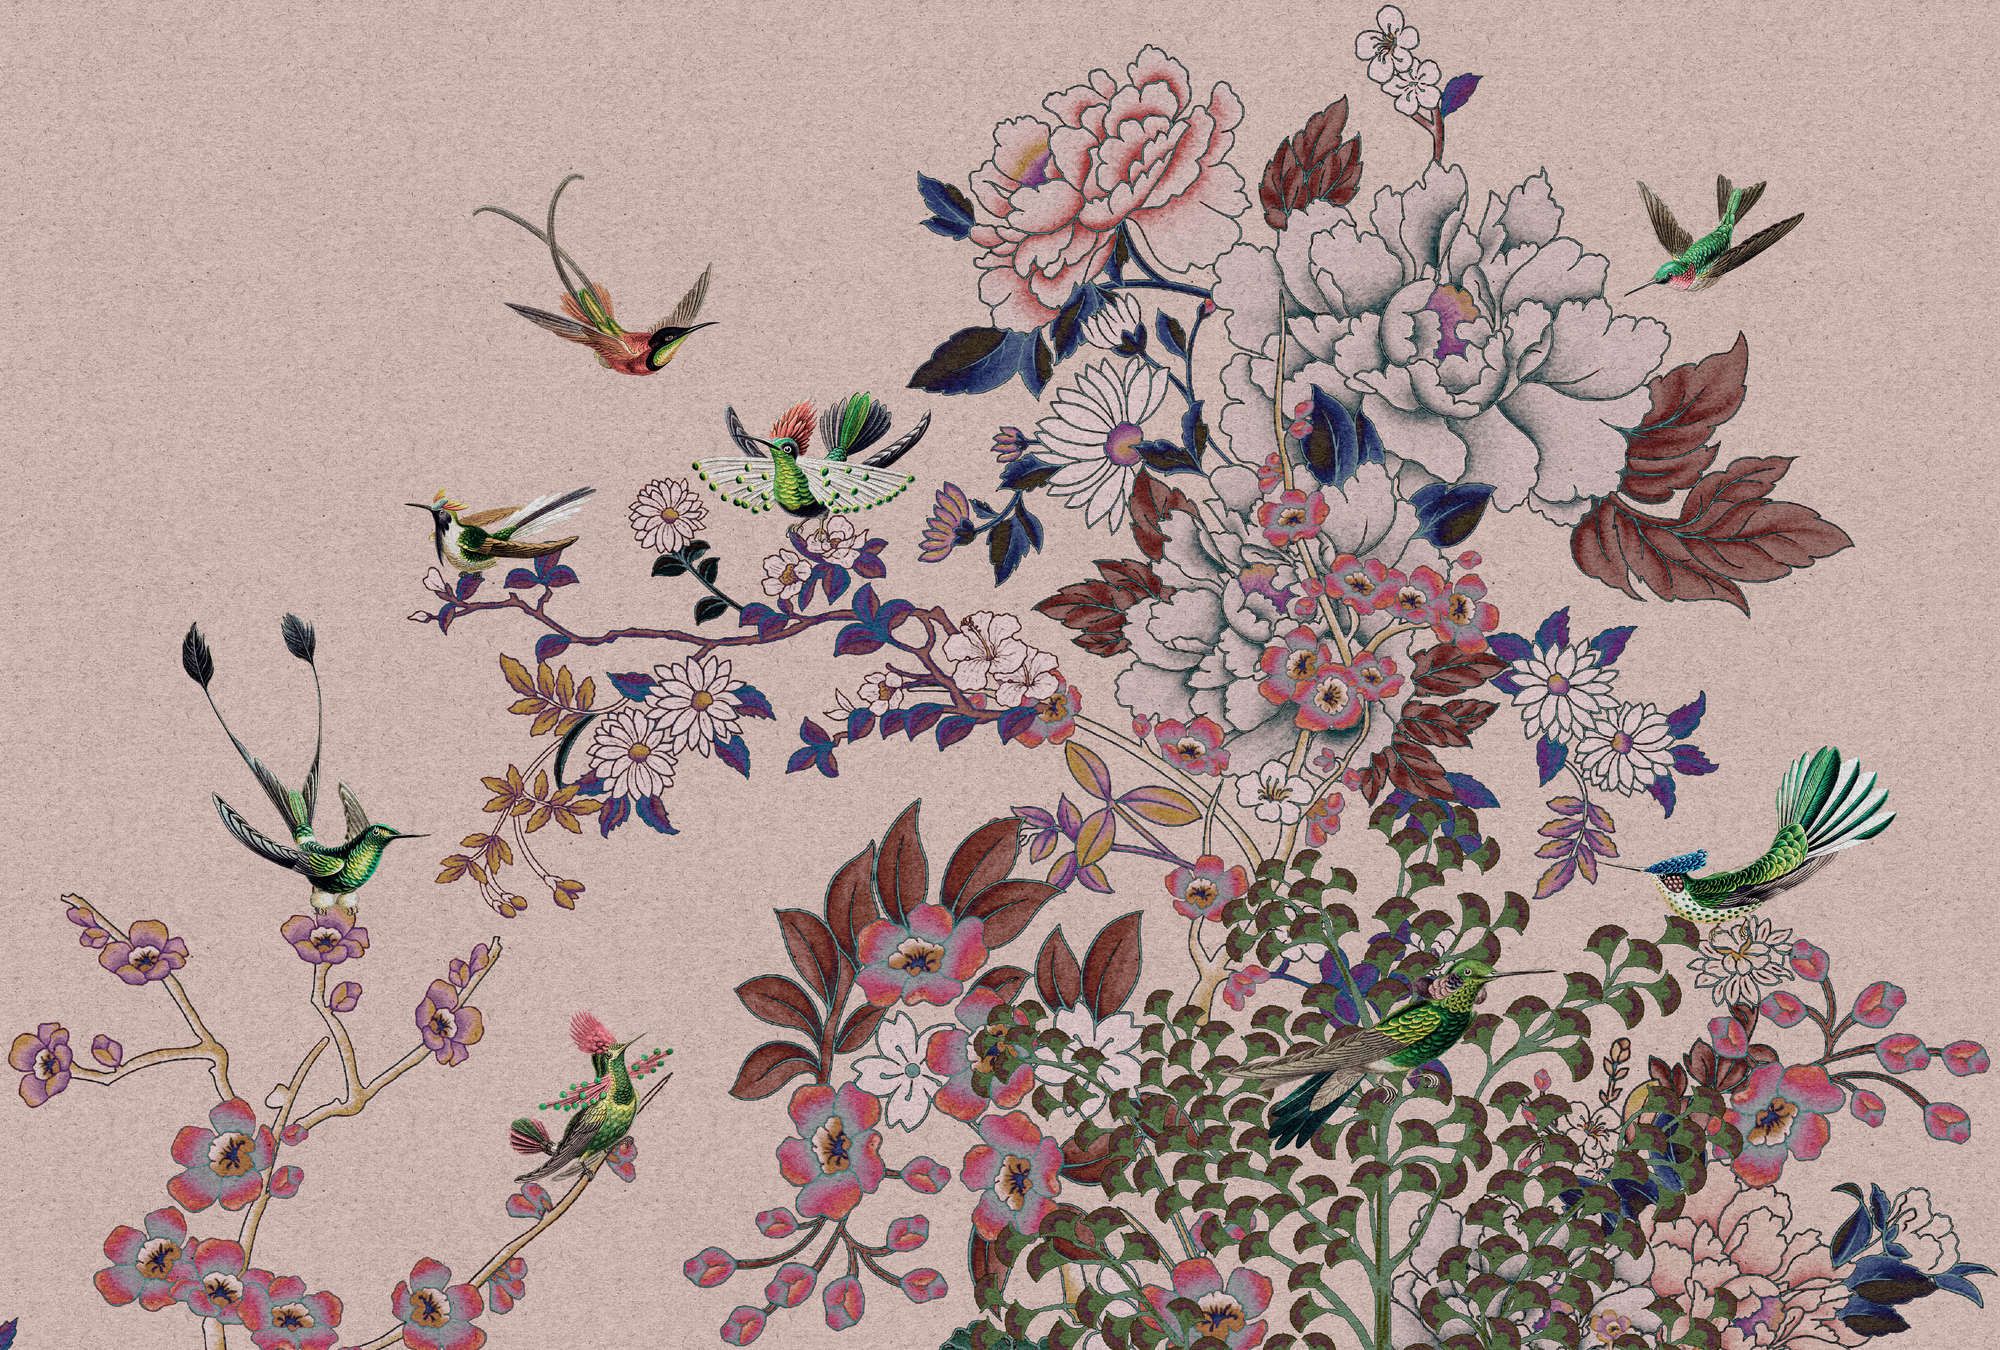             Fototapete »madras 2« - Roséfarbenes Blüten-Motiv mit Kolibris auf Kraftpapier-Struktur – Glattes, leicht perlmutt-schimmerndes Vlies
        